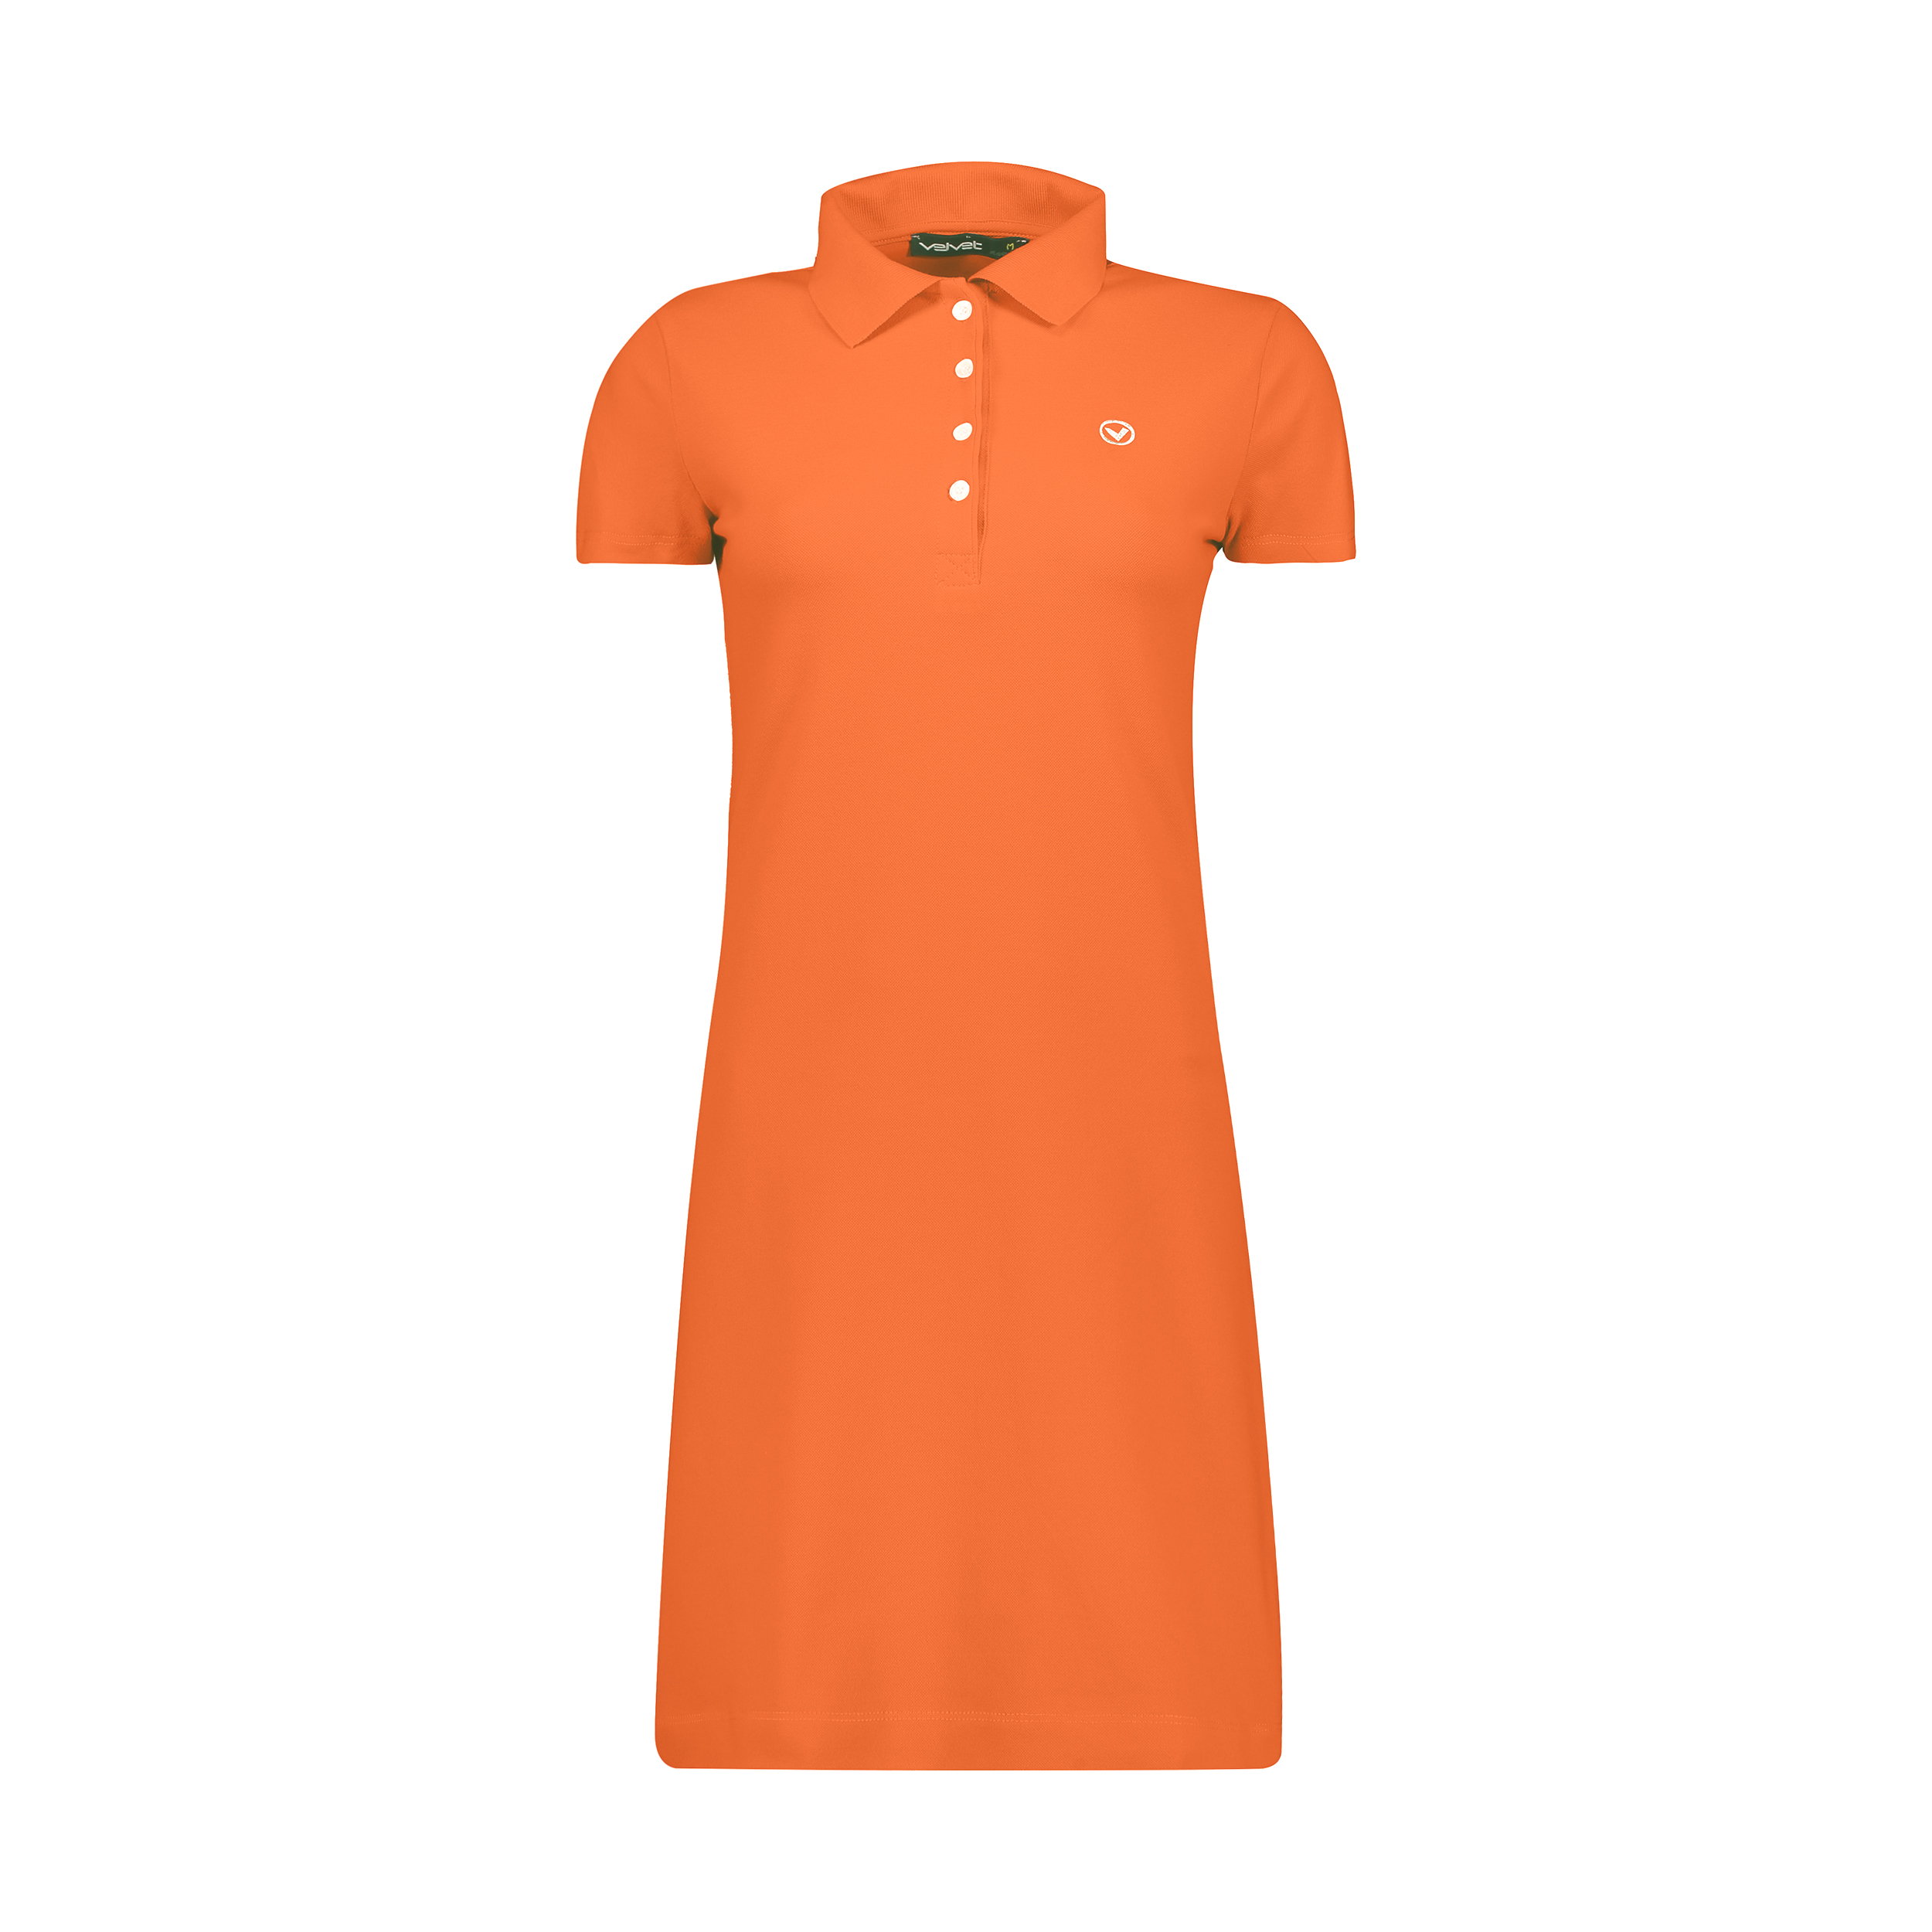 نکته خرید - قیمت روز پیراهن زنانه ولوت ریپابلیک کد N9810040-92 خرید